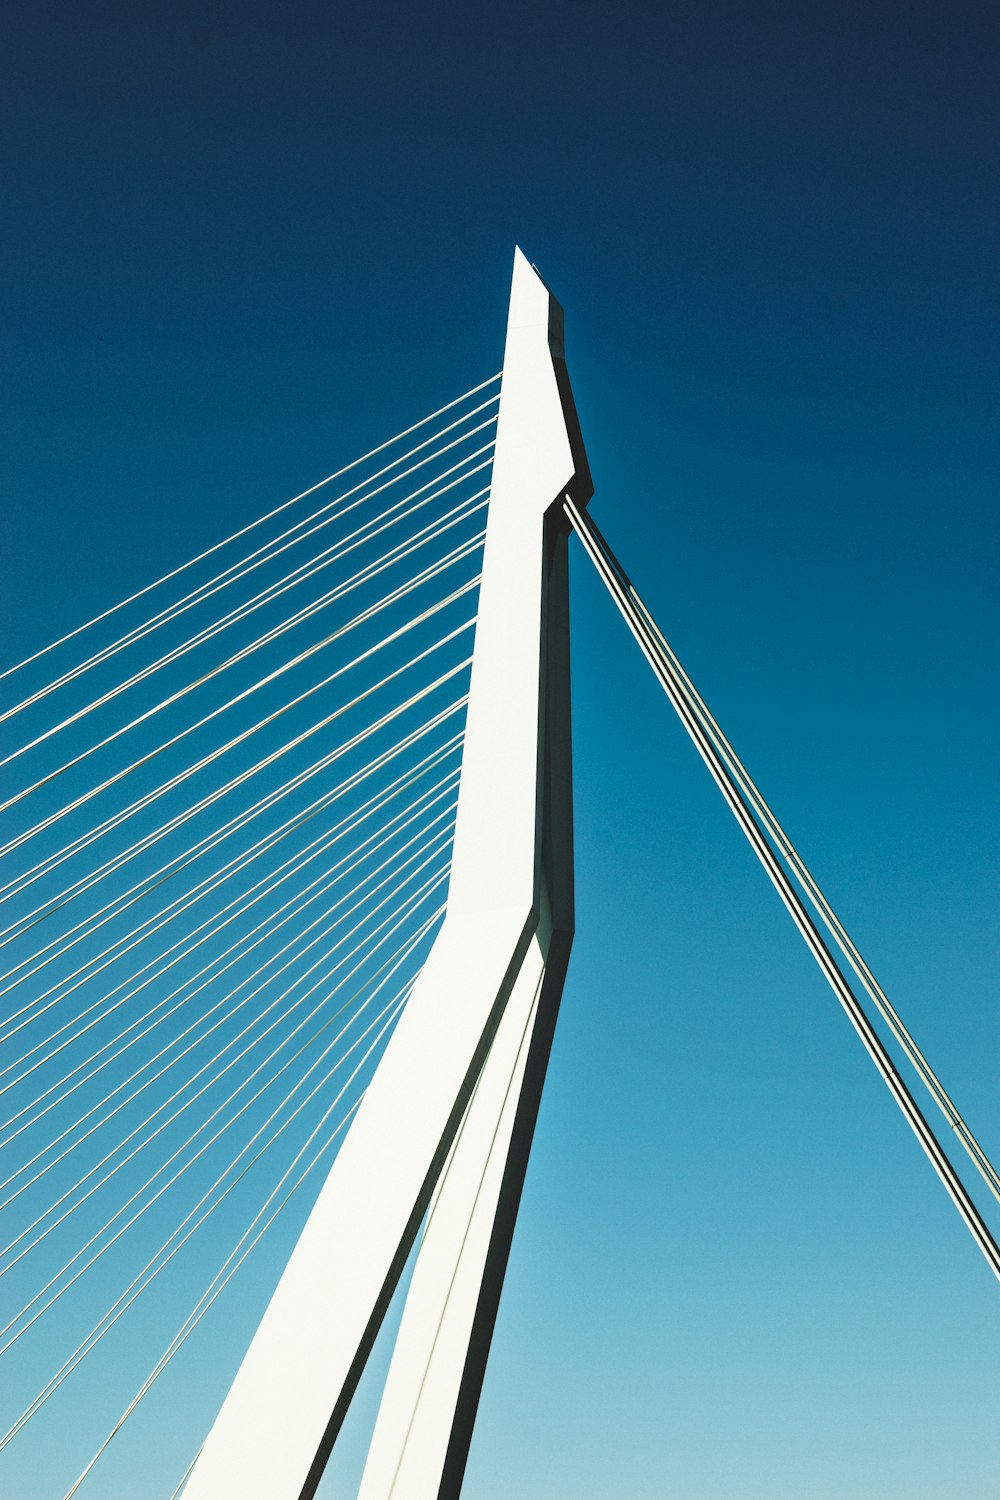 Puente blanco y negro bajo el cielo azul durante el día